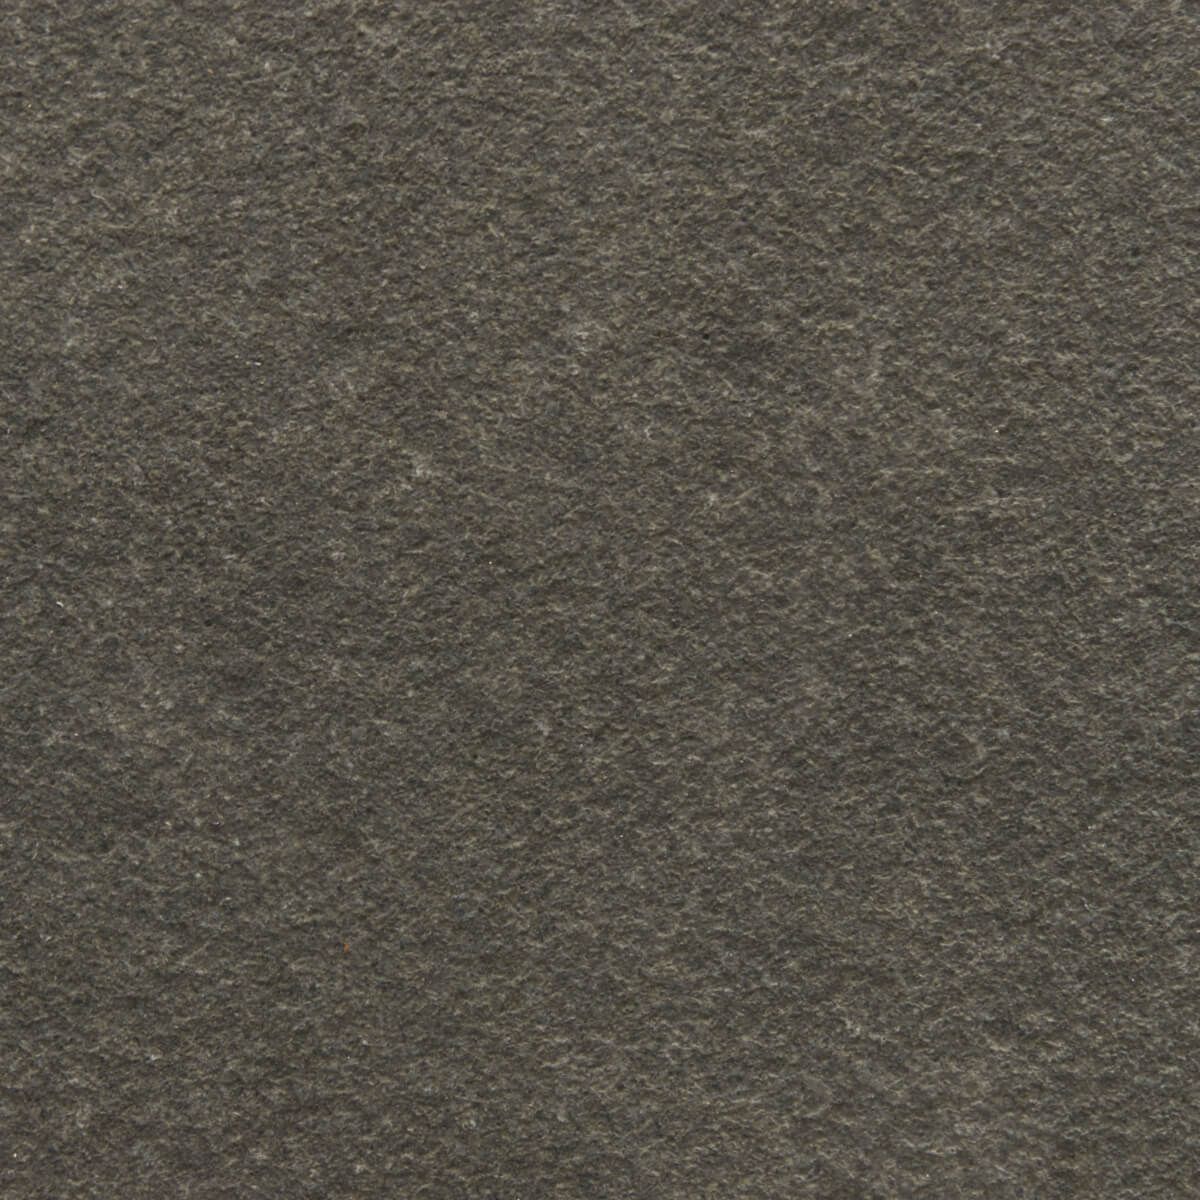 Płytki Granitowe Black Andesit płomieniowane 60x60x2 cm